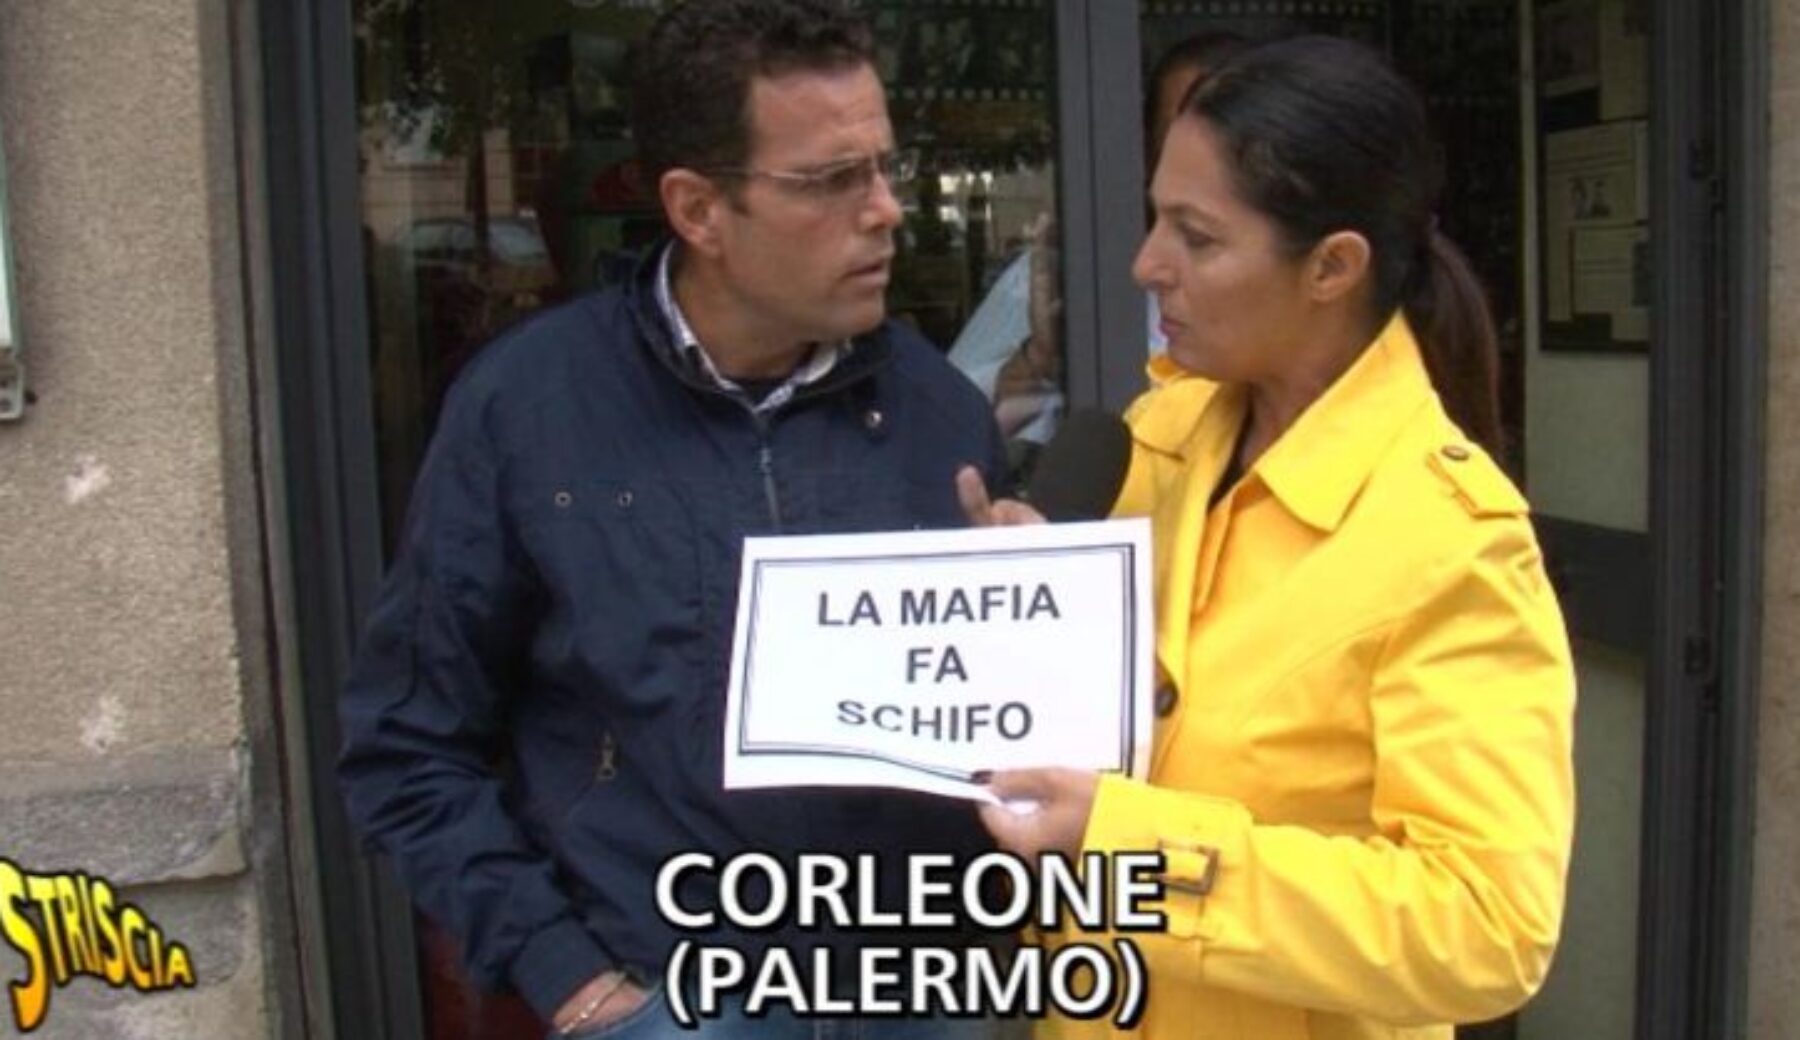 A Striscia la notizia Stefania Petyx a Corleone per un selfie contro la mafia